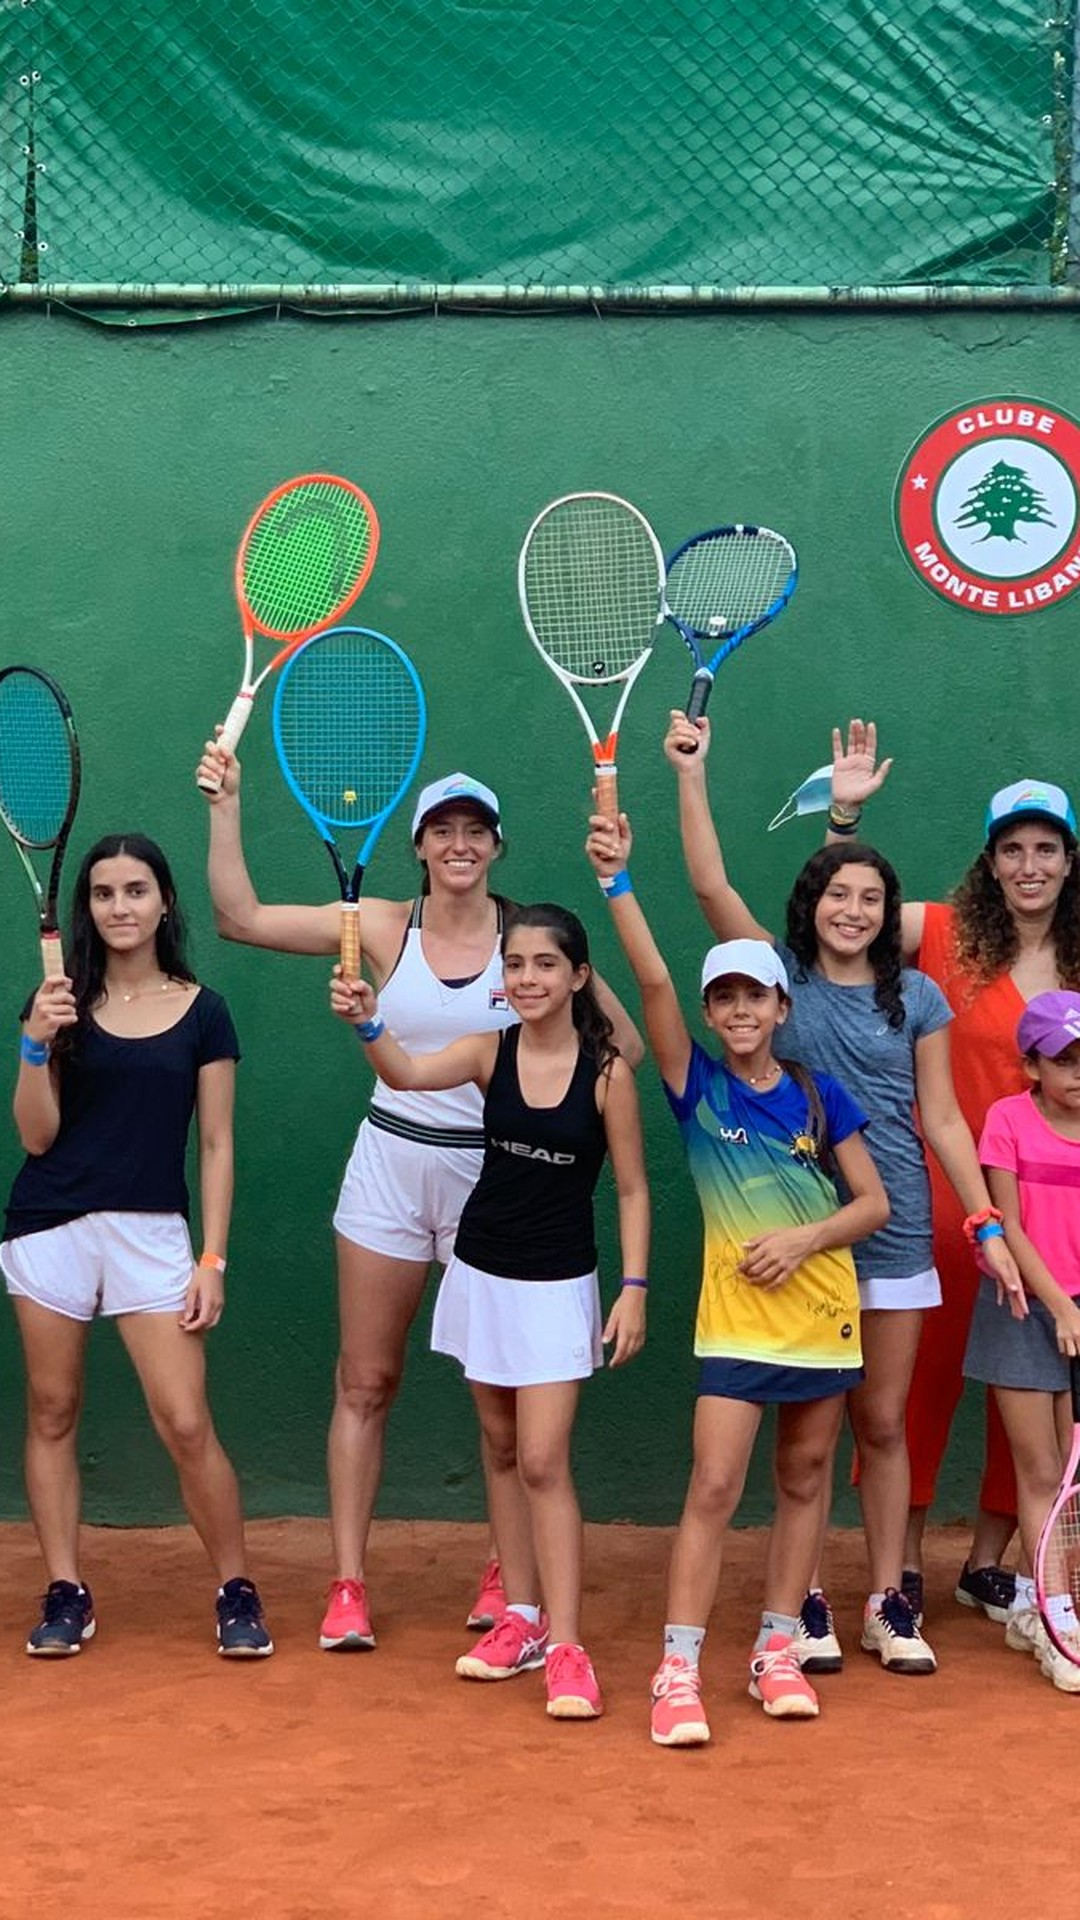 Torneio sênior de tênis, com entrada gratuita, reunirá atletas de vários  países na Barra da Tijuca